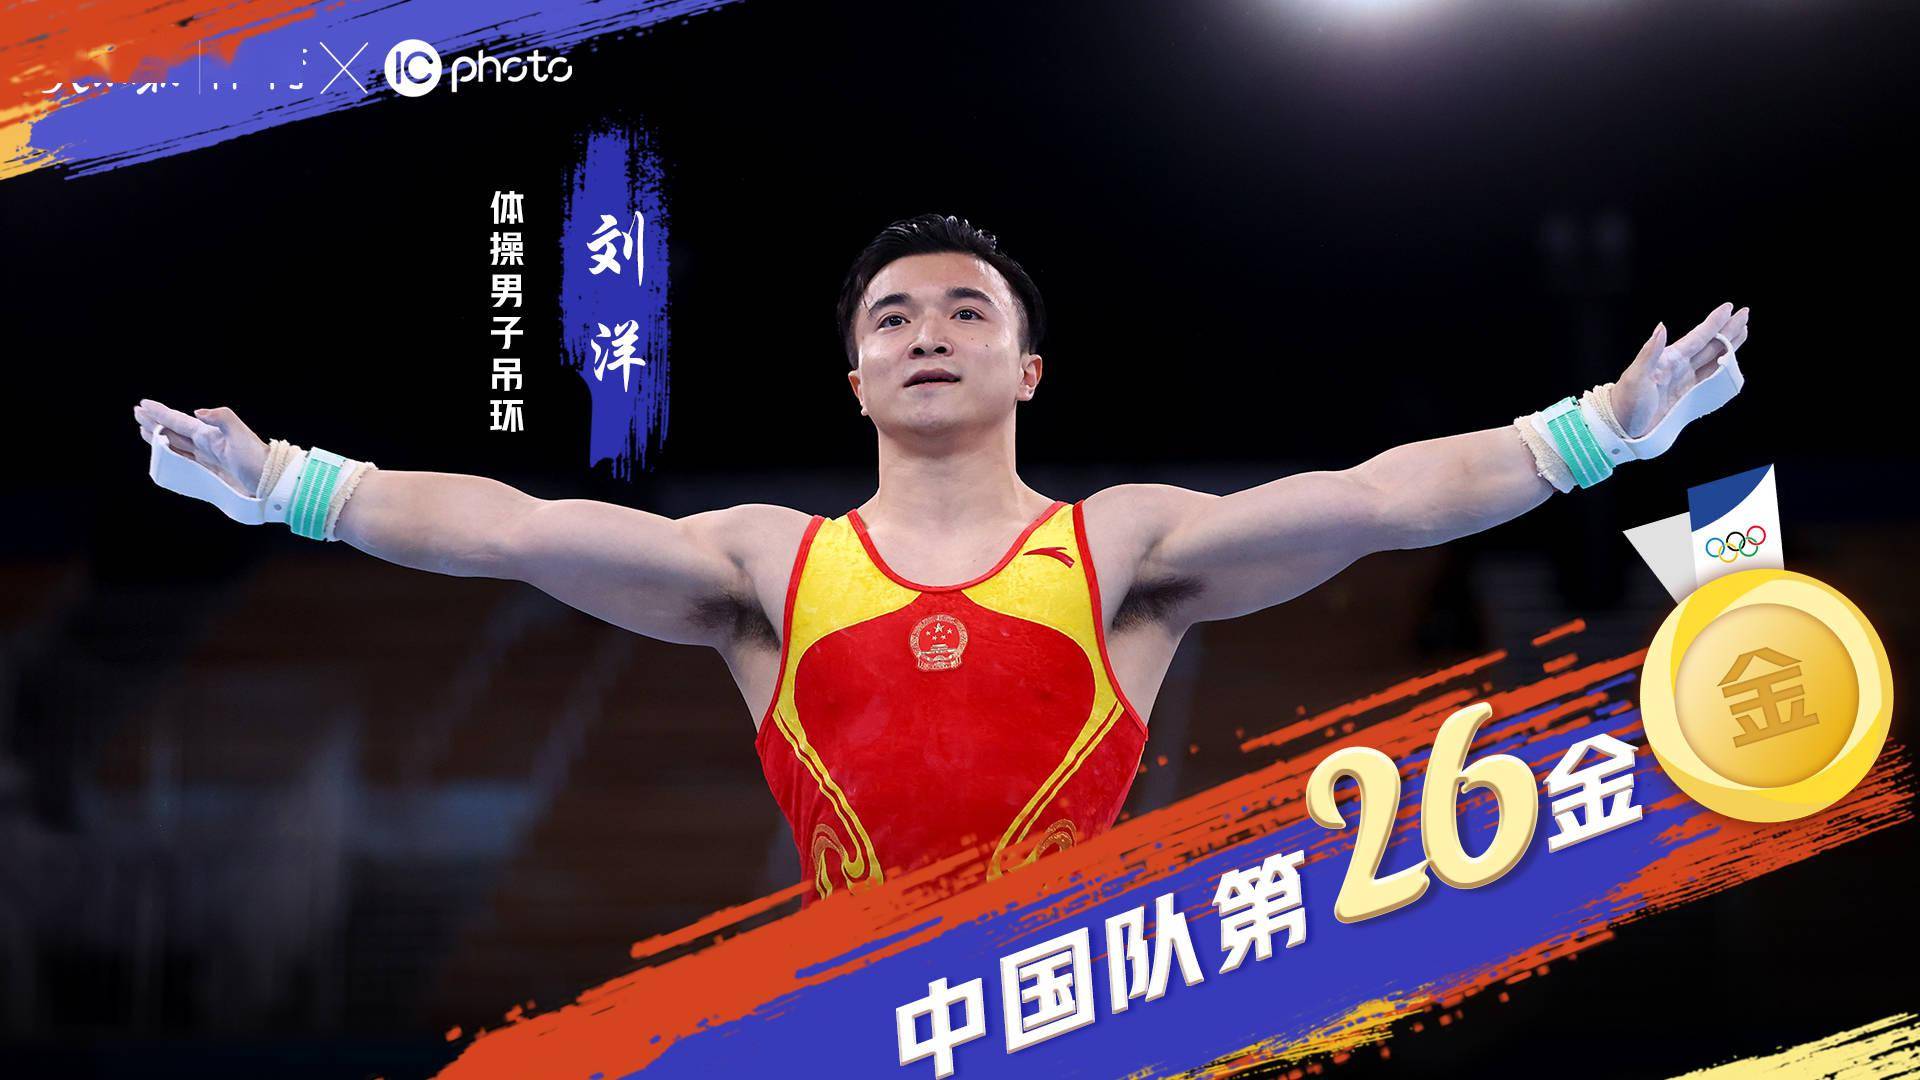 中国男子体操运动员刘洋,凭借超完美的发挥,成功夺得东京奥运会男子